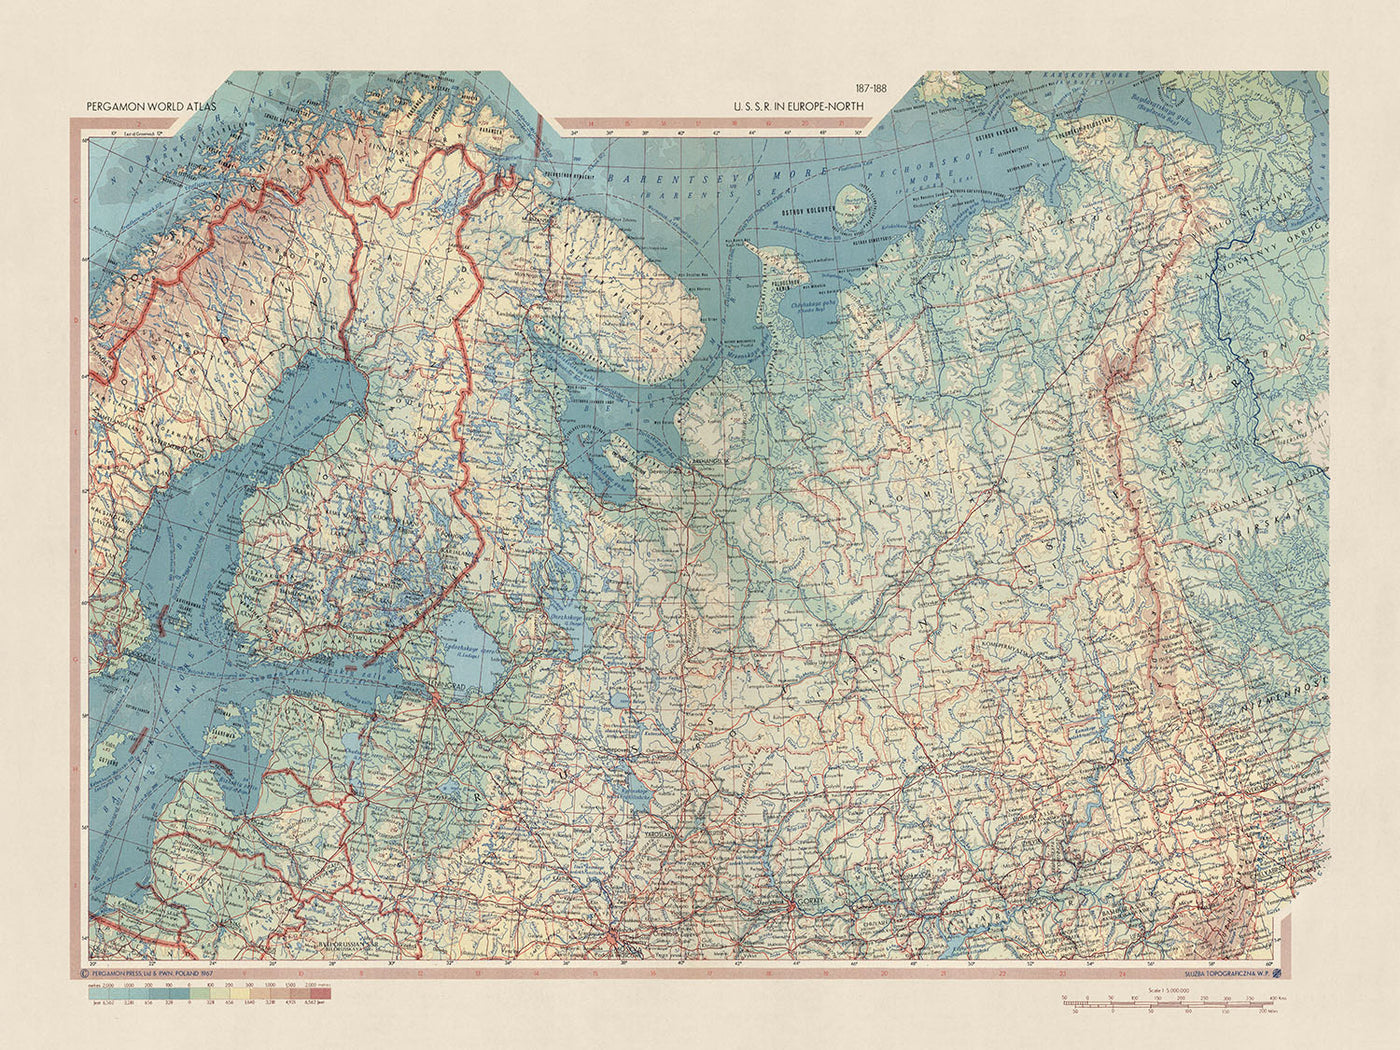 Mapa antiguo de la URSS en Europa (Norte) realizado por el Servicio de Topografía del Ejército Polaco, 1967: Estonia, Finlandia, Letonia, Rusia, características físicas y políticas detalladas